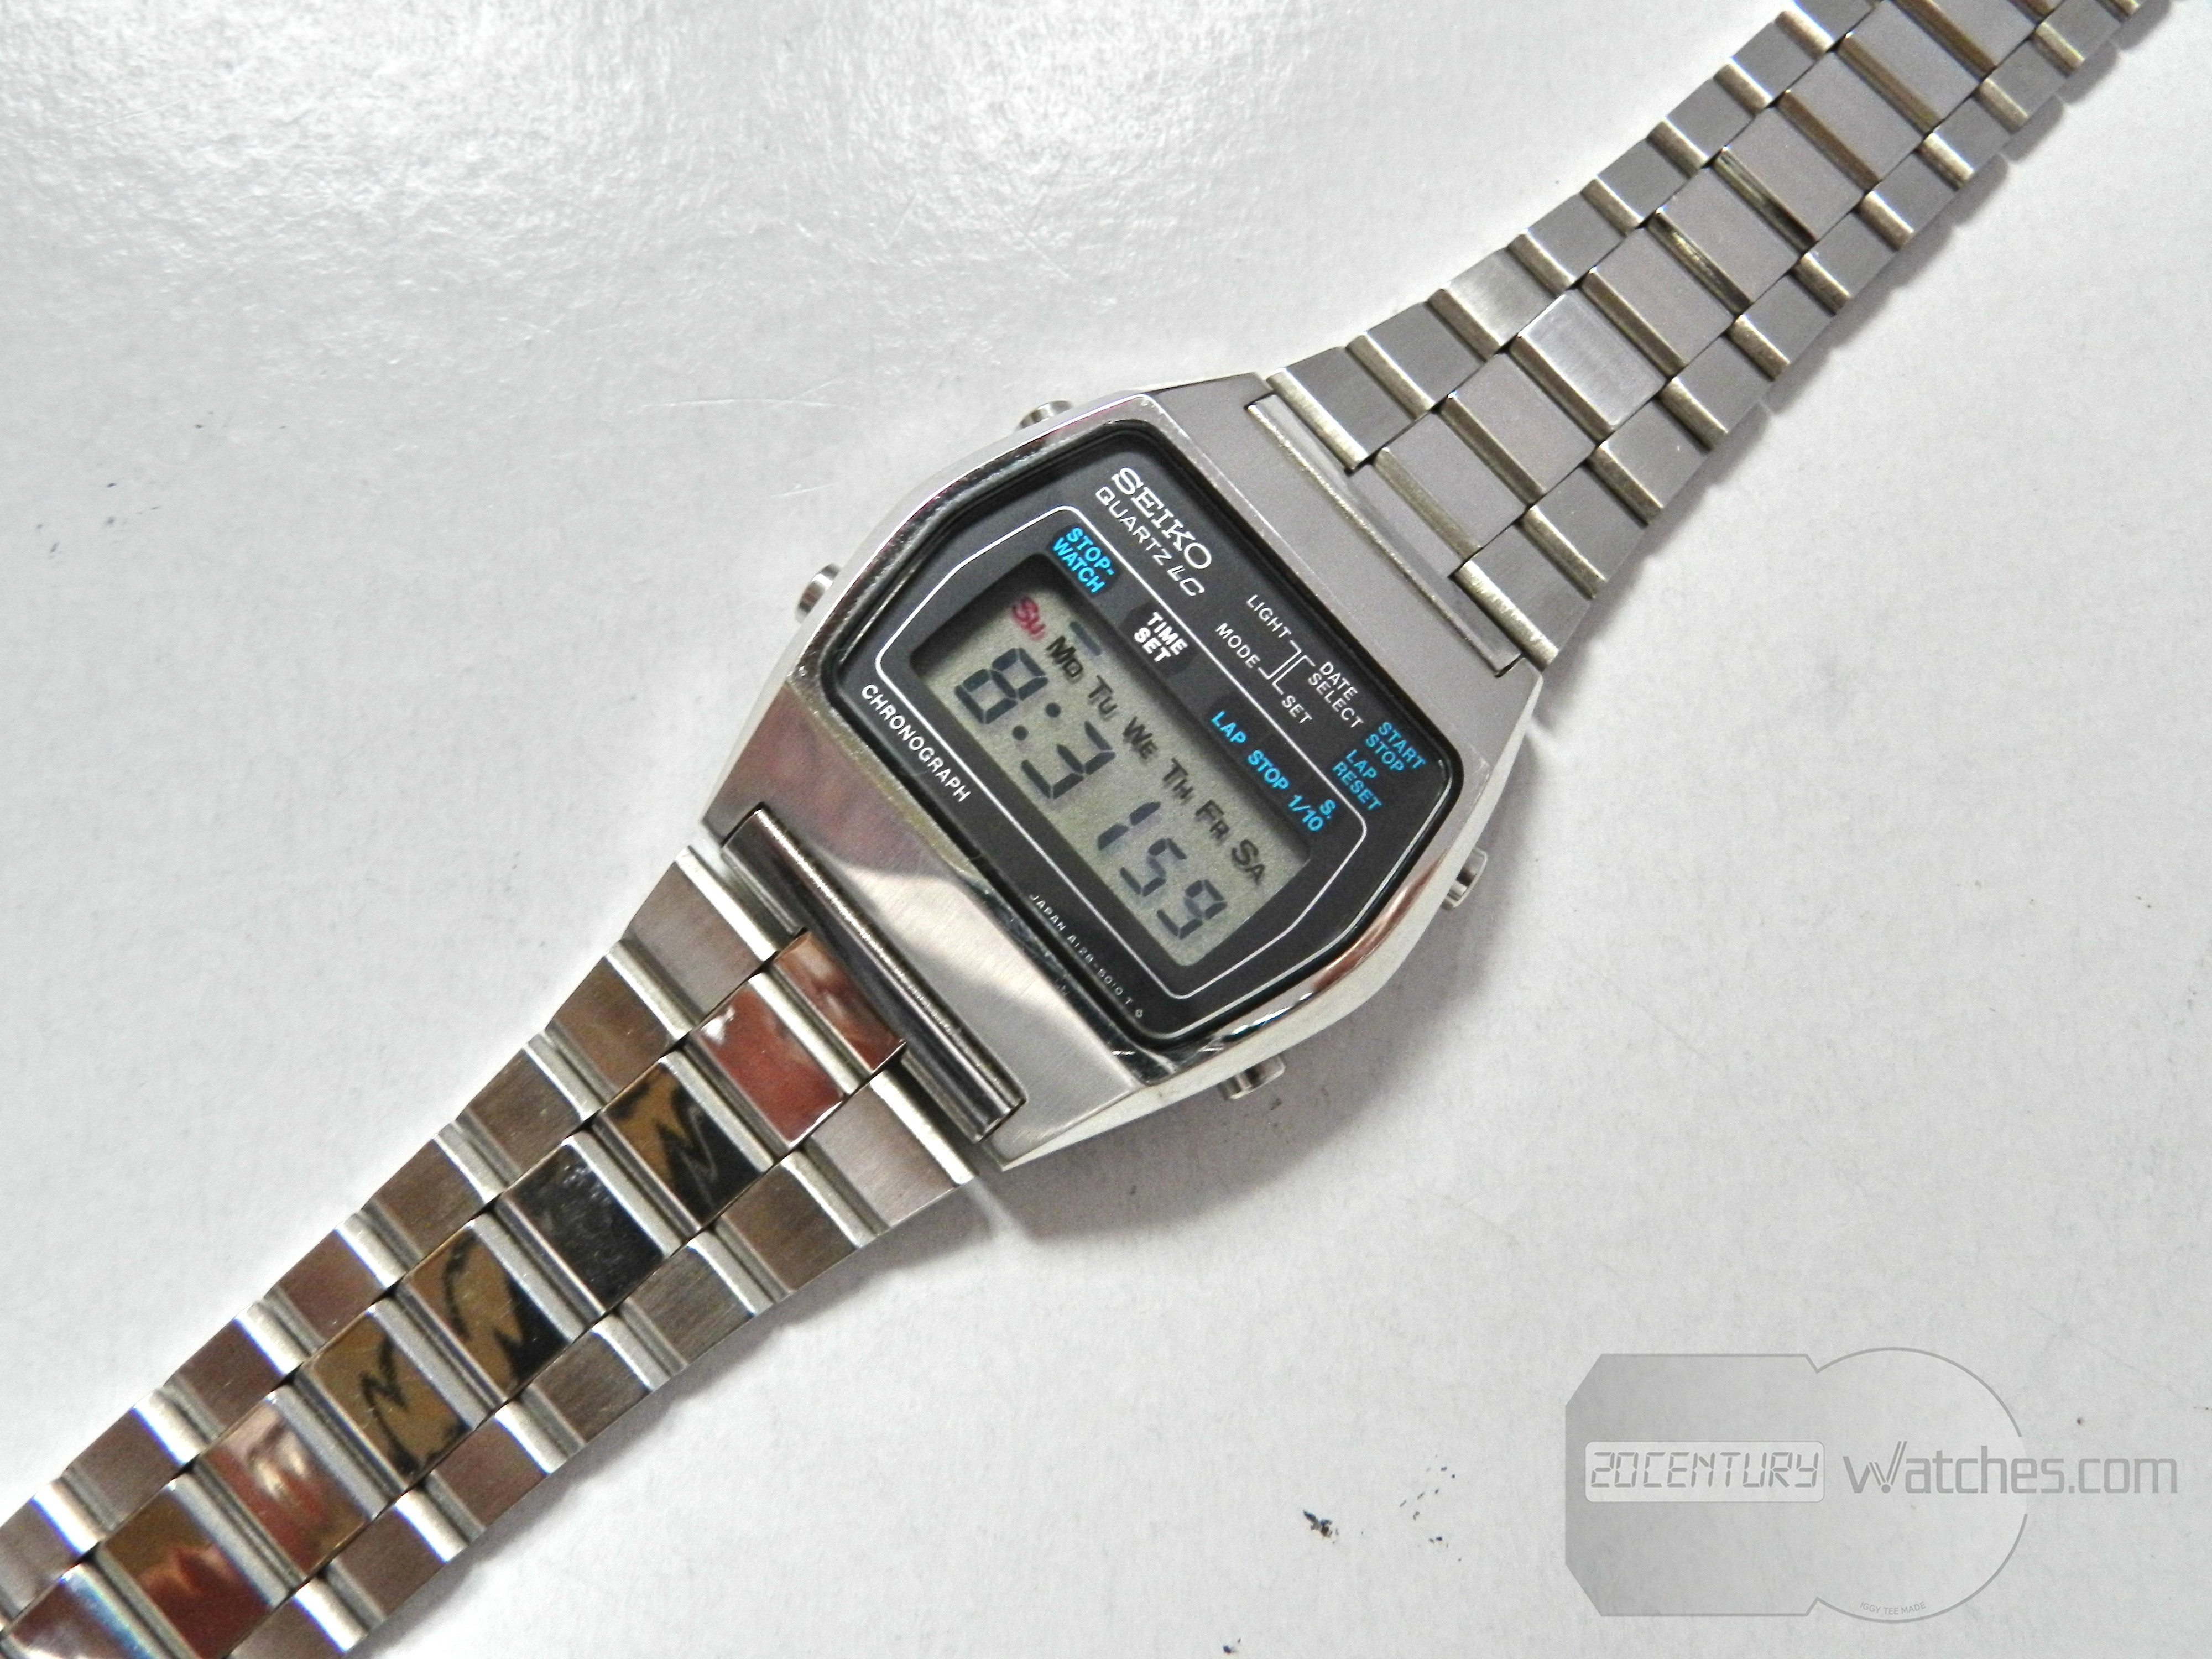 Seiko A128-5010 – 20th Century Watches